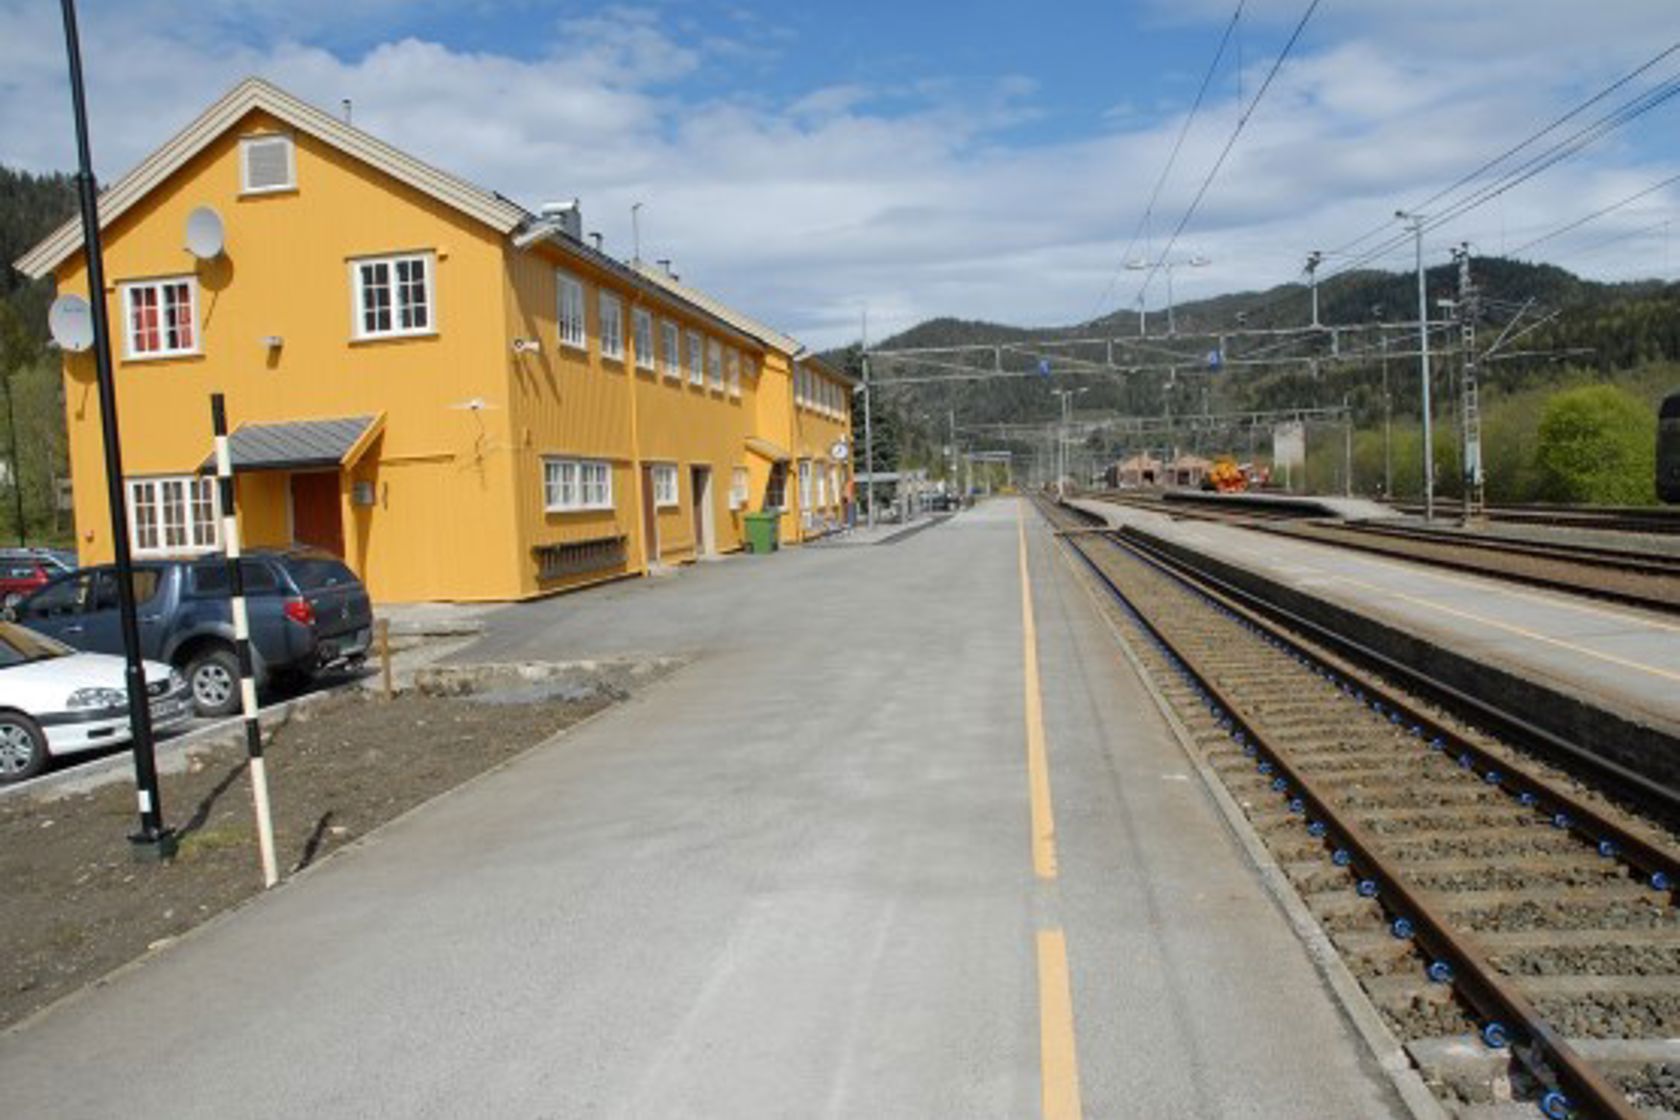 Exterior view of Støren station